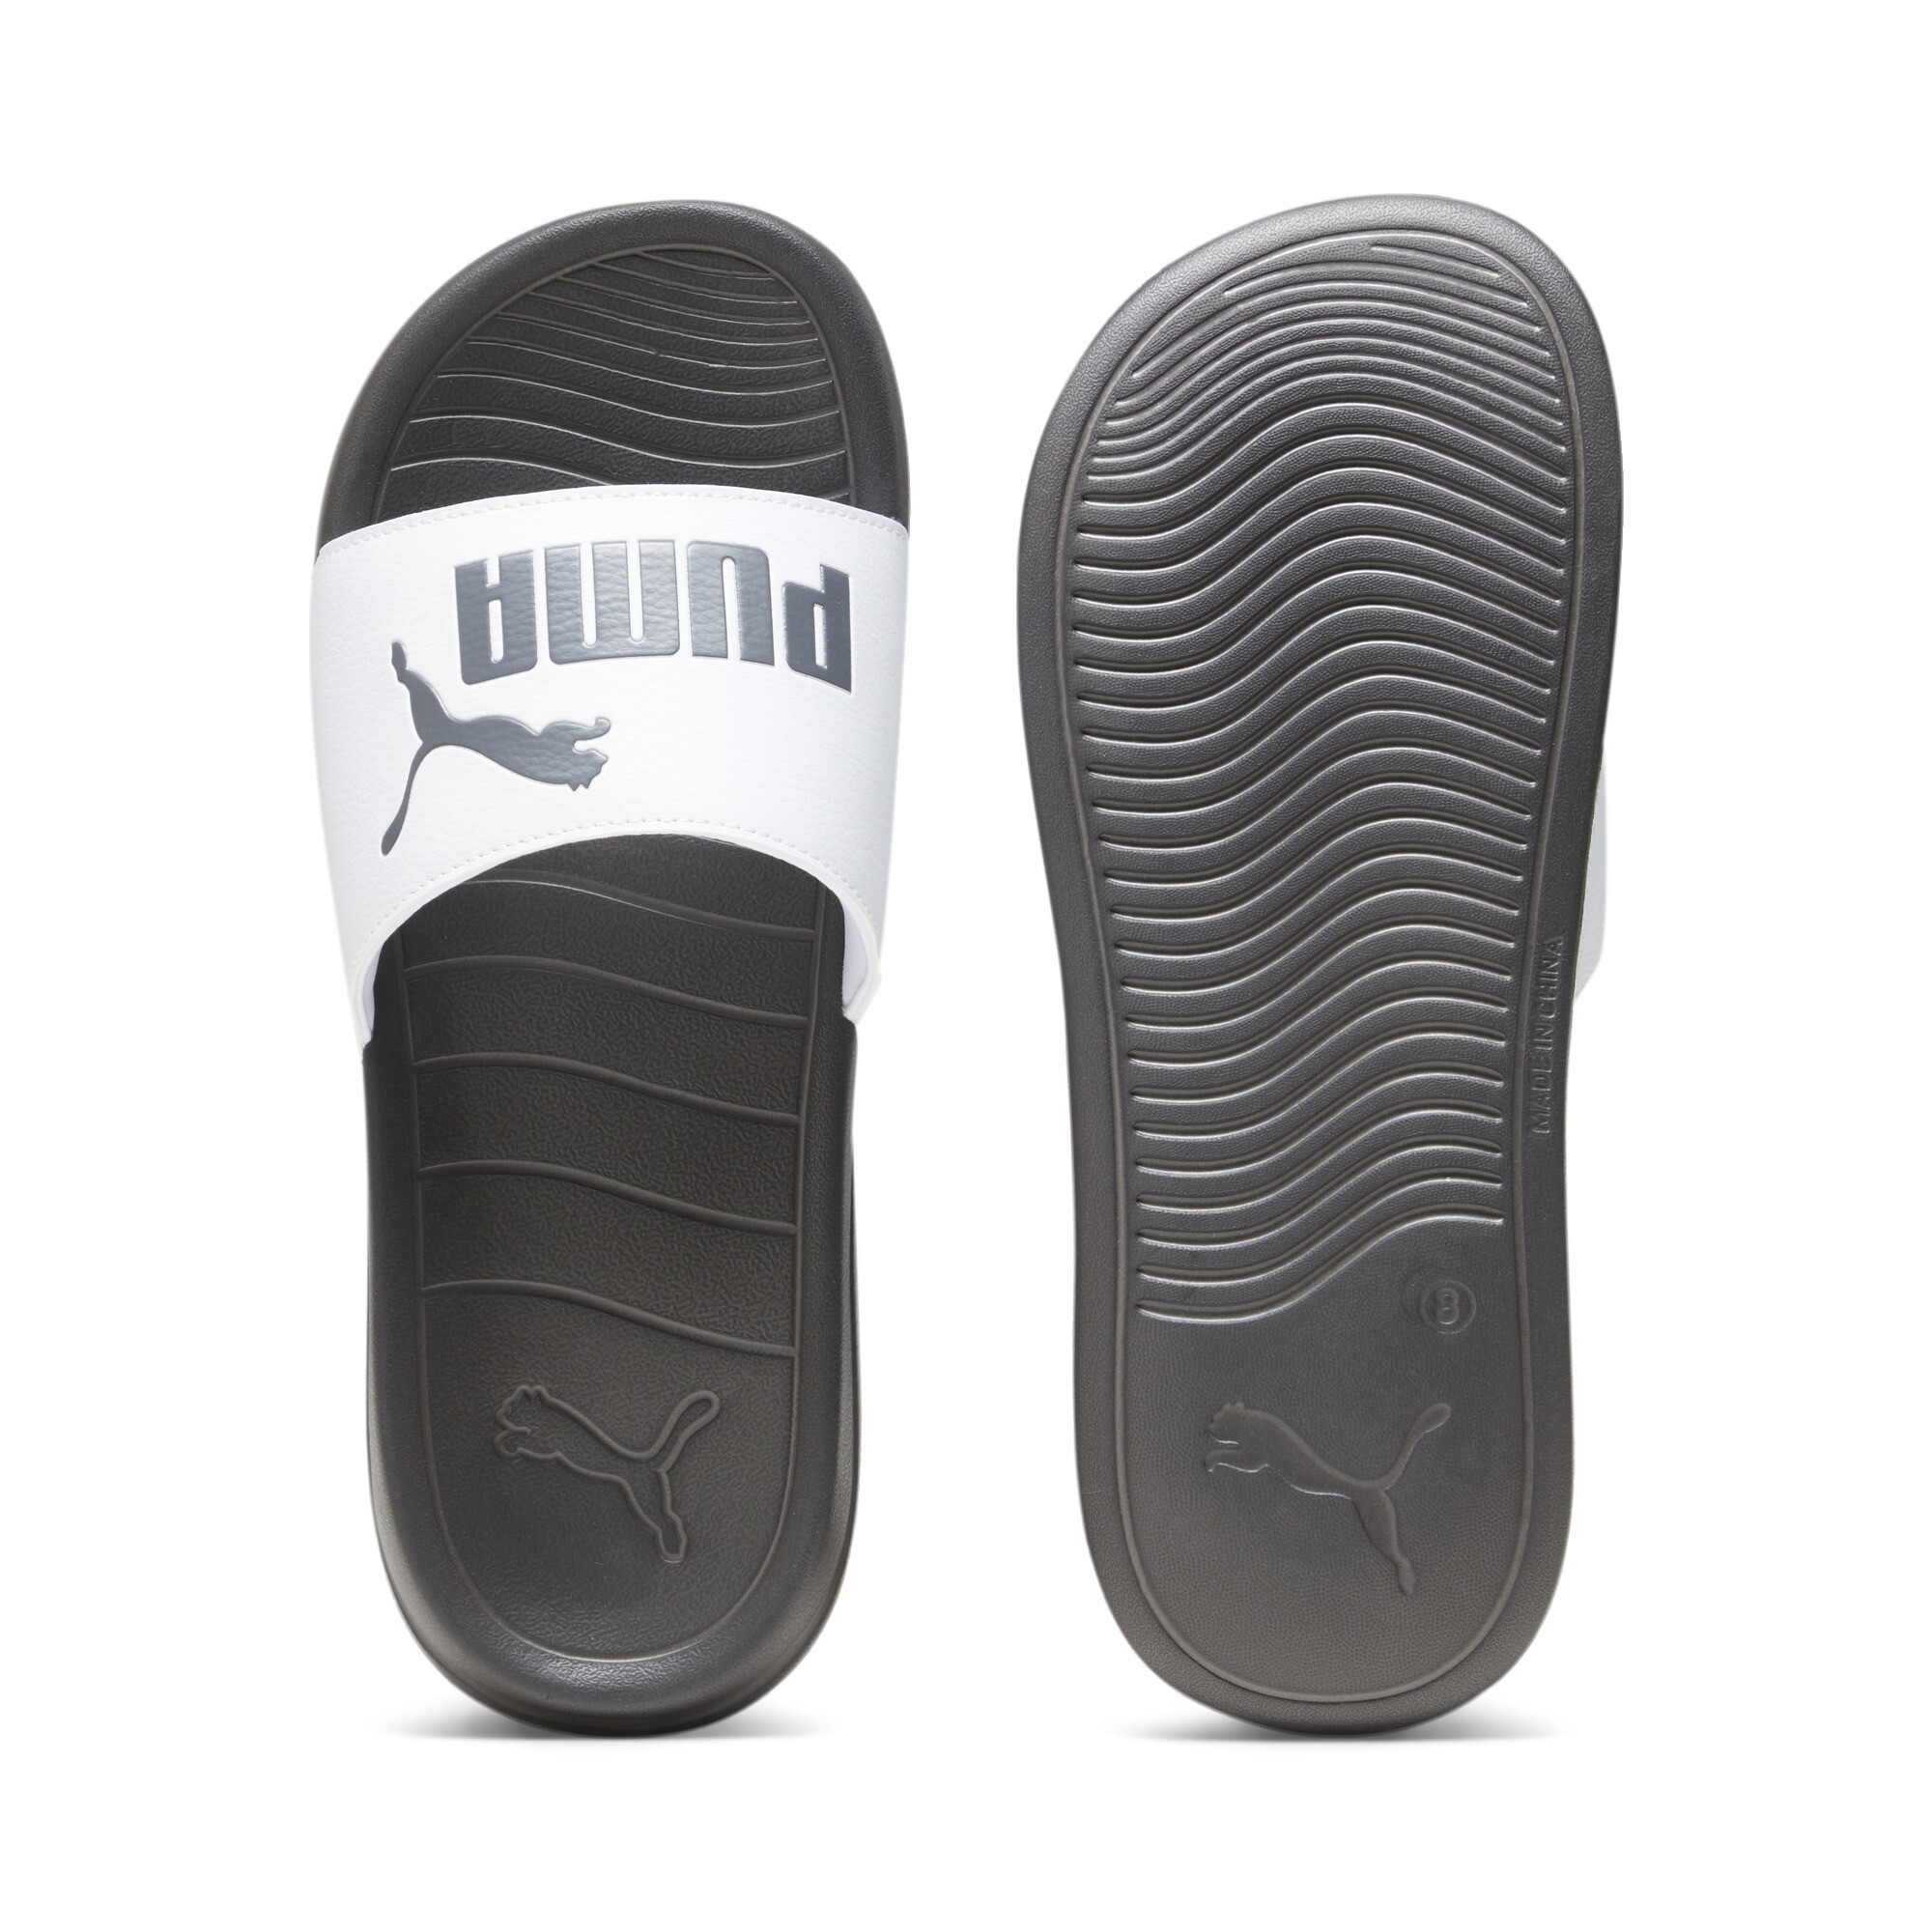 Puma Popcat 20 Sandals, White, Size 35.5, Shoes